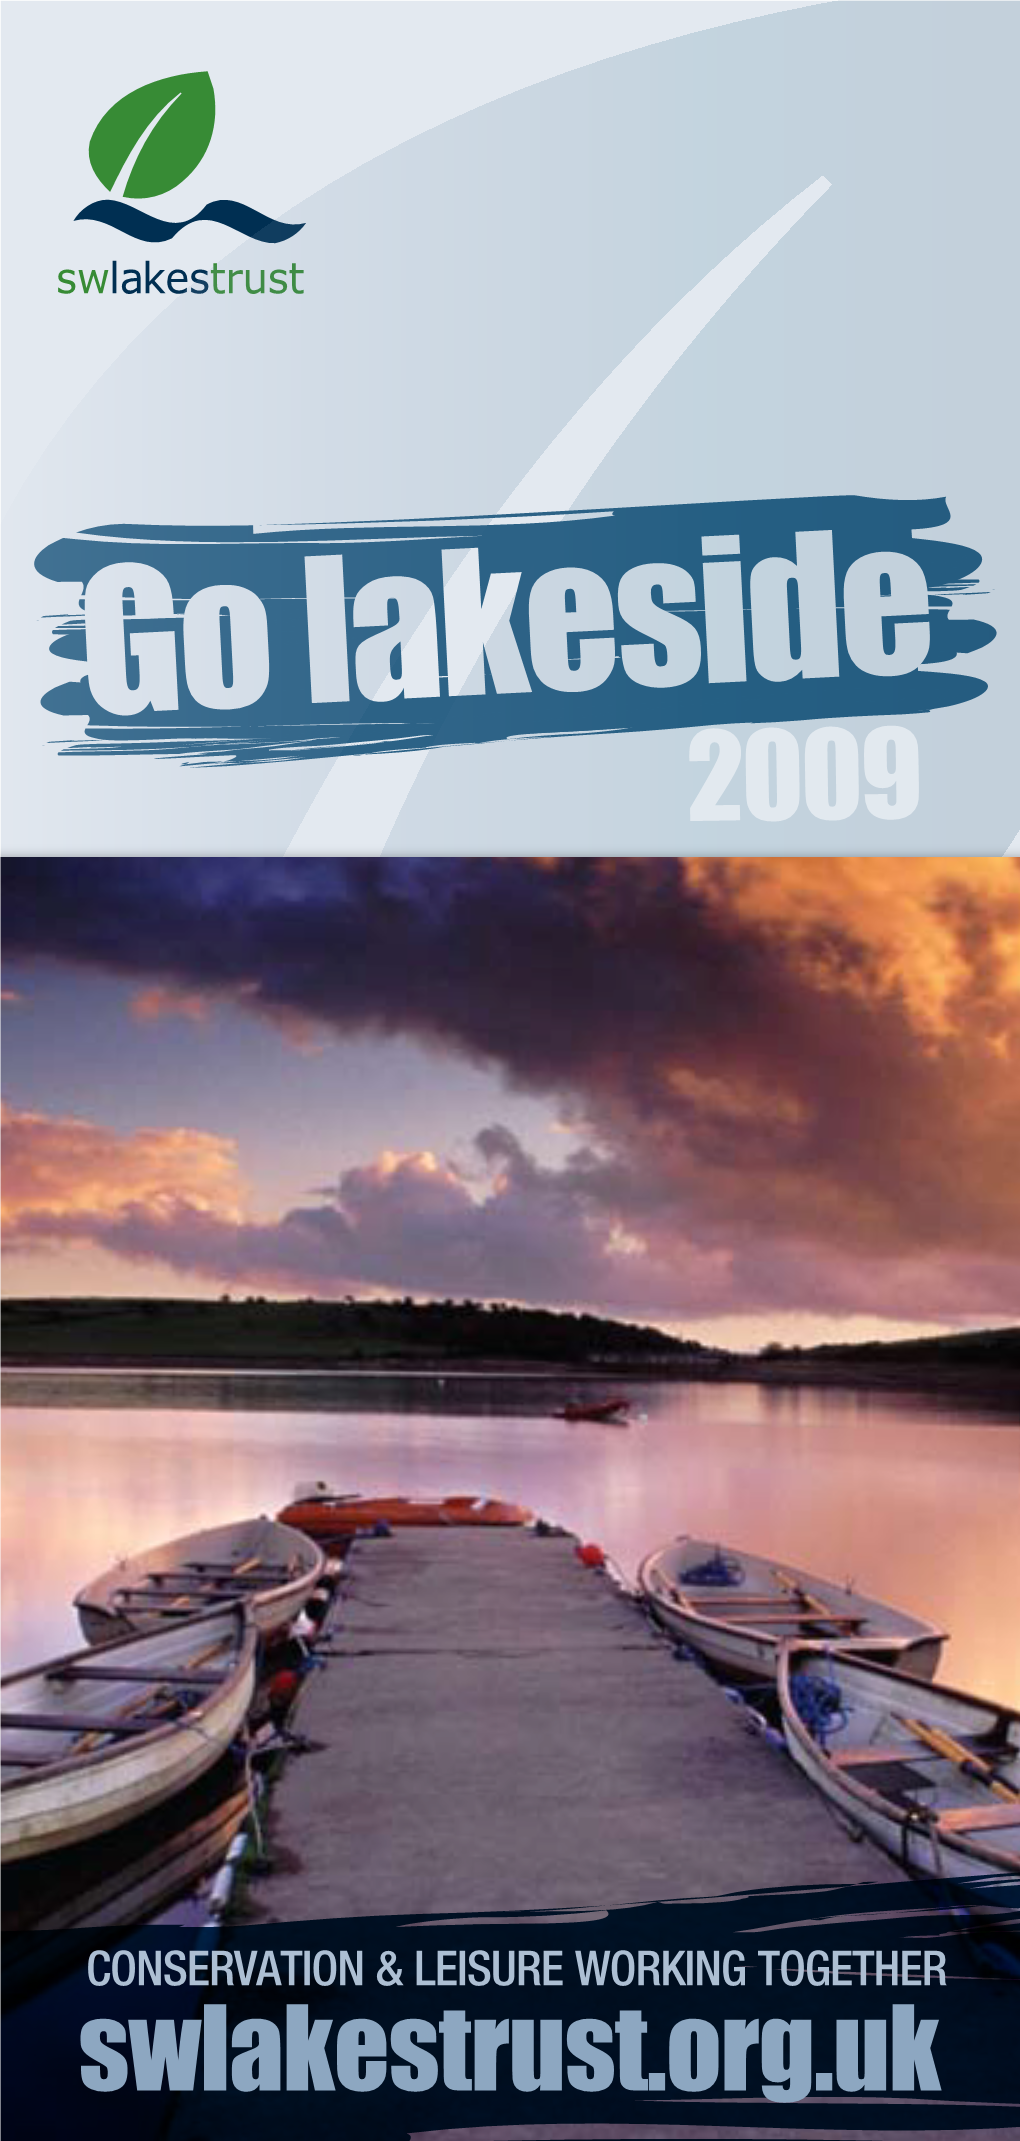 Go Lakeside 2009